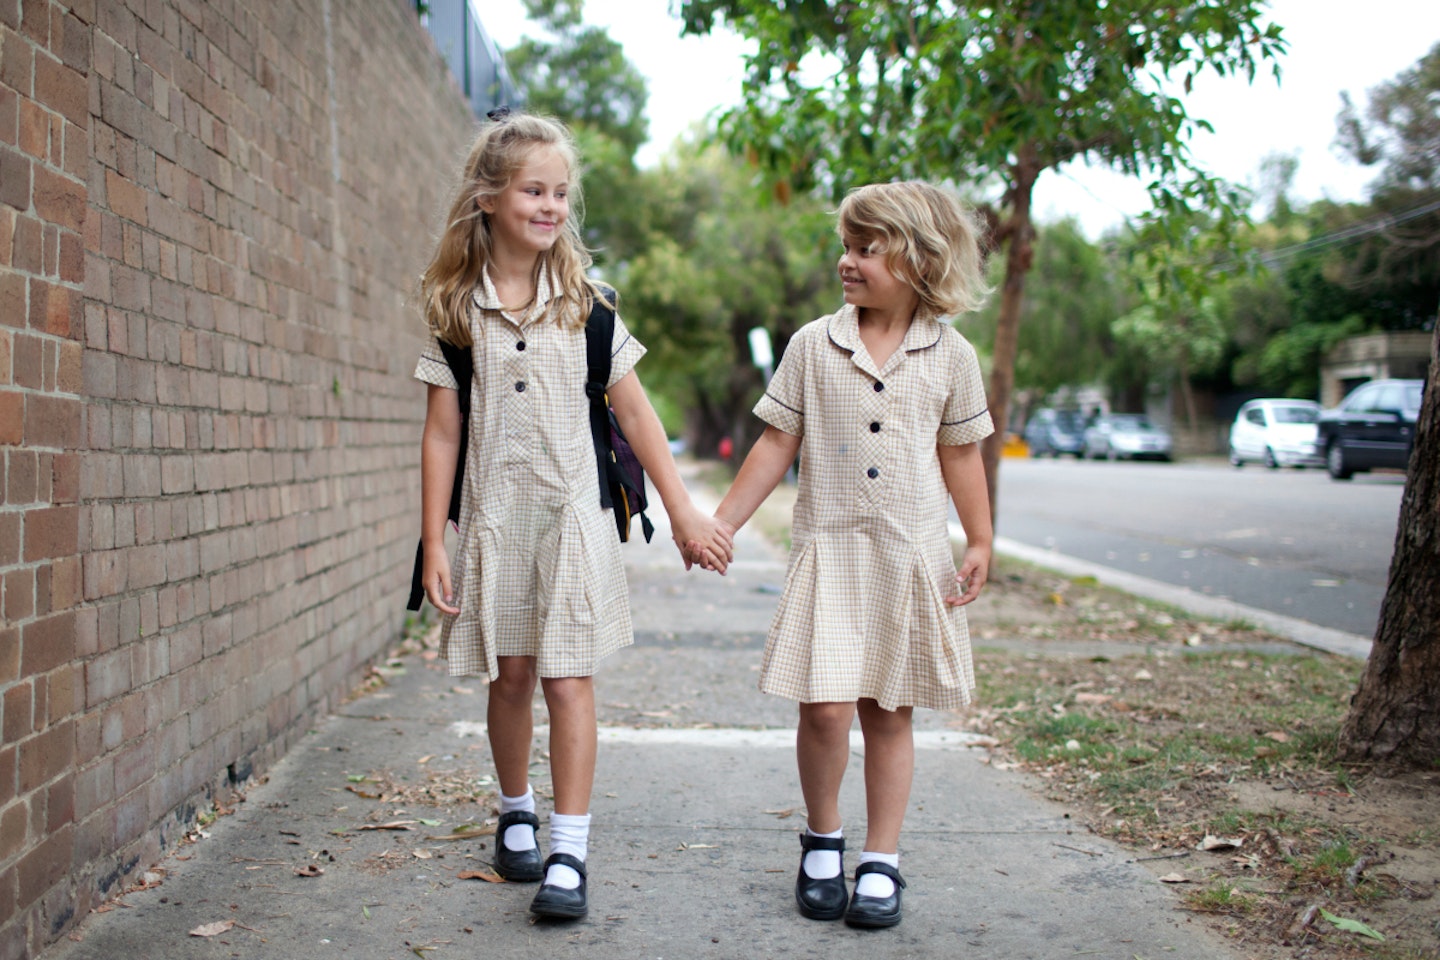 school-girls-children-walking-school-uniform